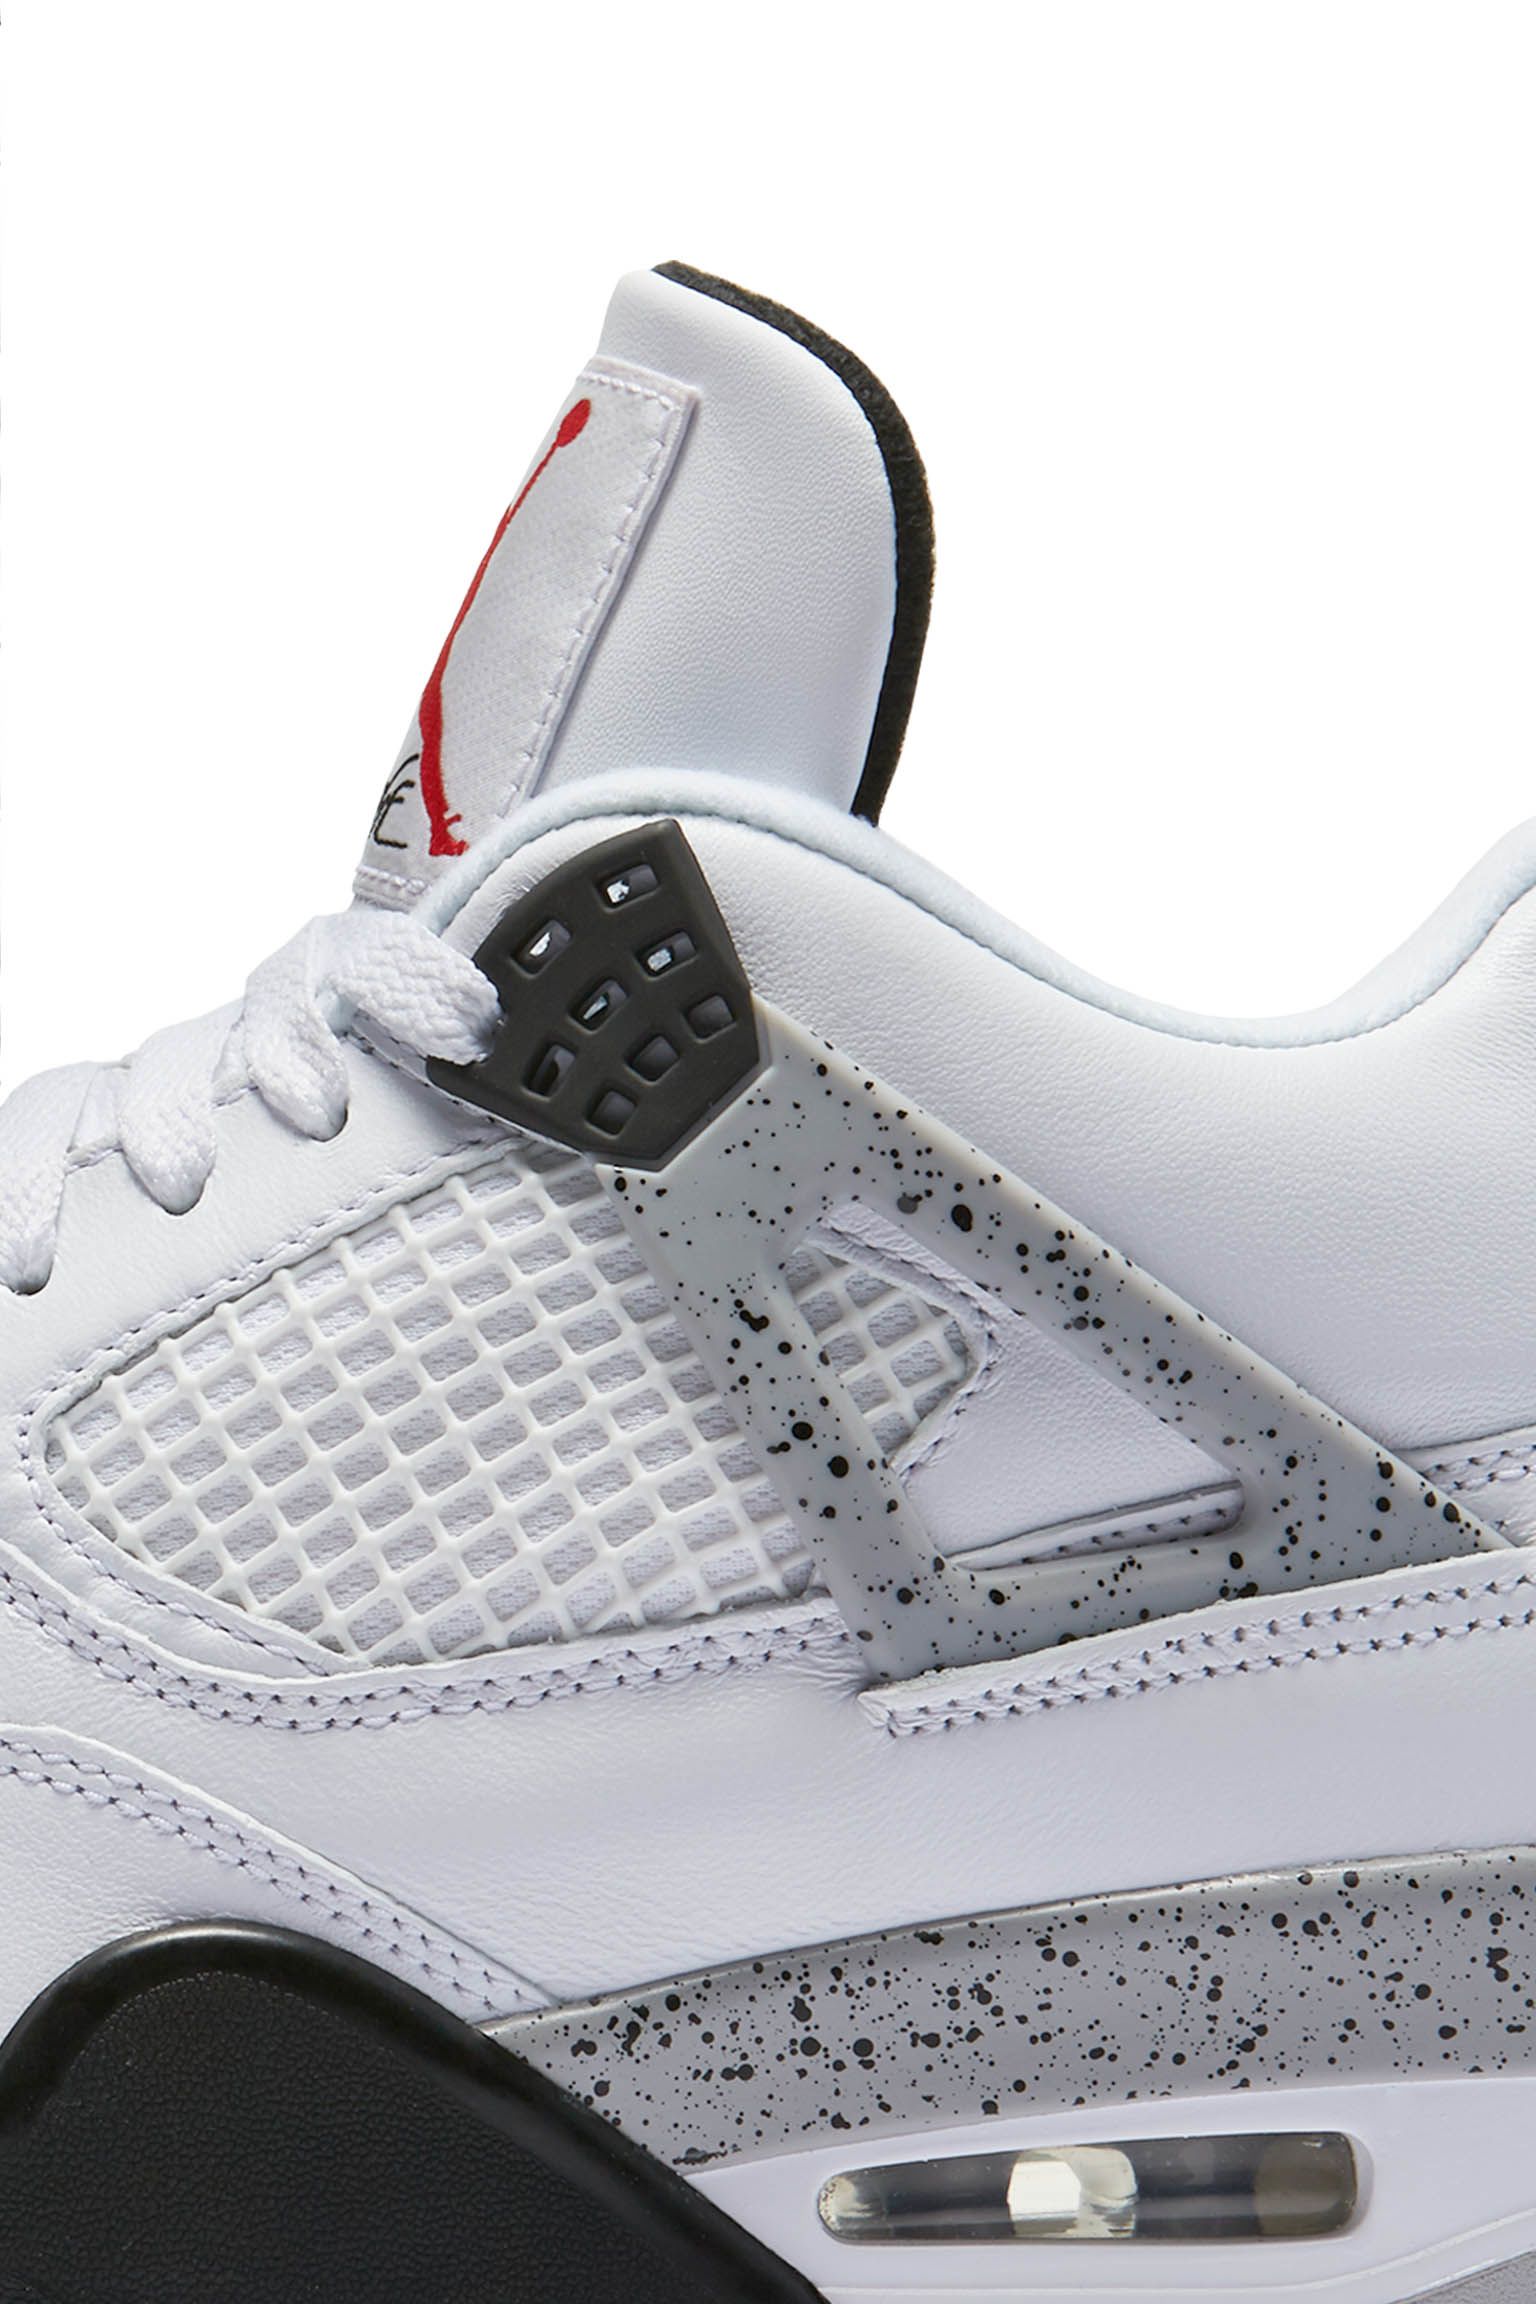 برج الحمام الياسمين Air Jordan 4 Retro 'White Cement Grey' Release Date. Nike SNKRS برج الحمام الياسمين